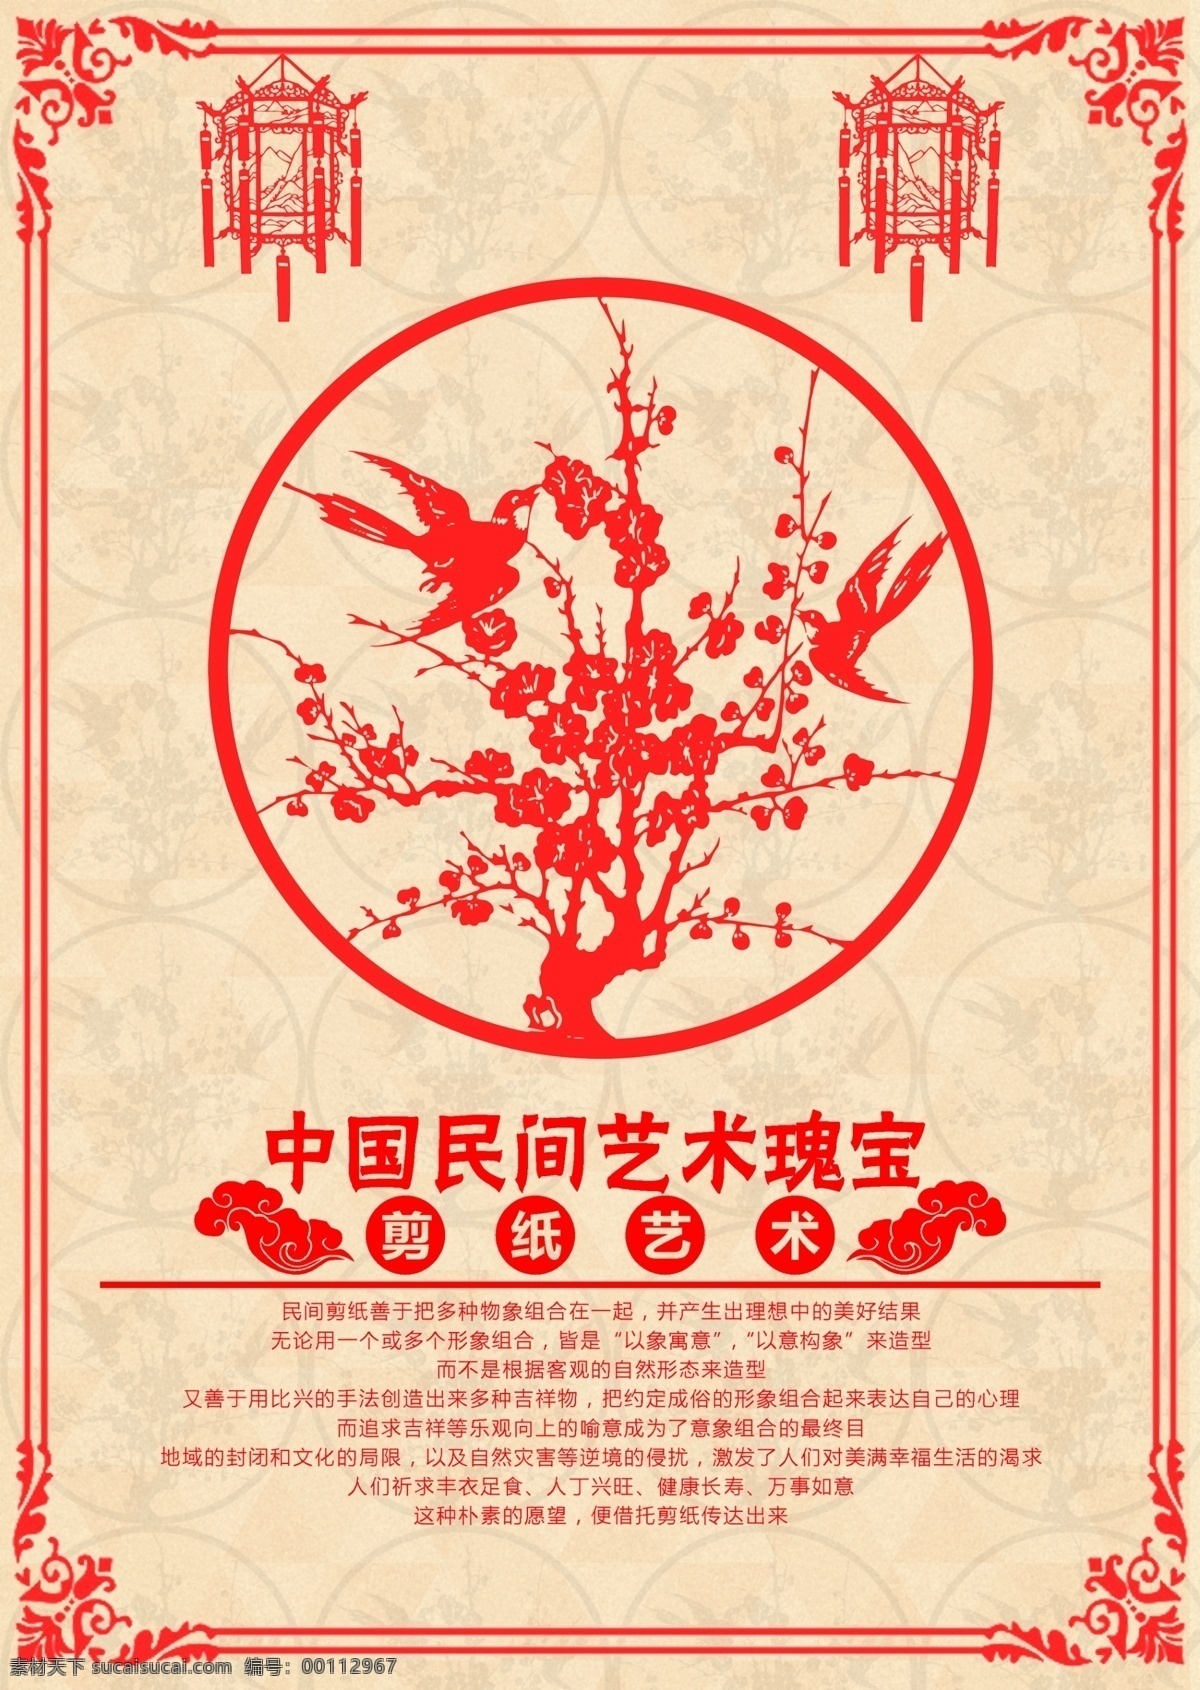 剪纸 梅花版 海报 民间艺术 中国剪纸 剪纸梅花 中国瑰宝 黄色